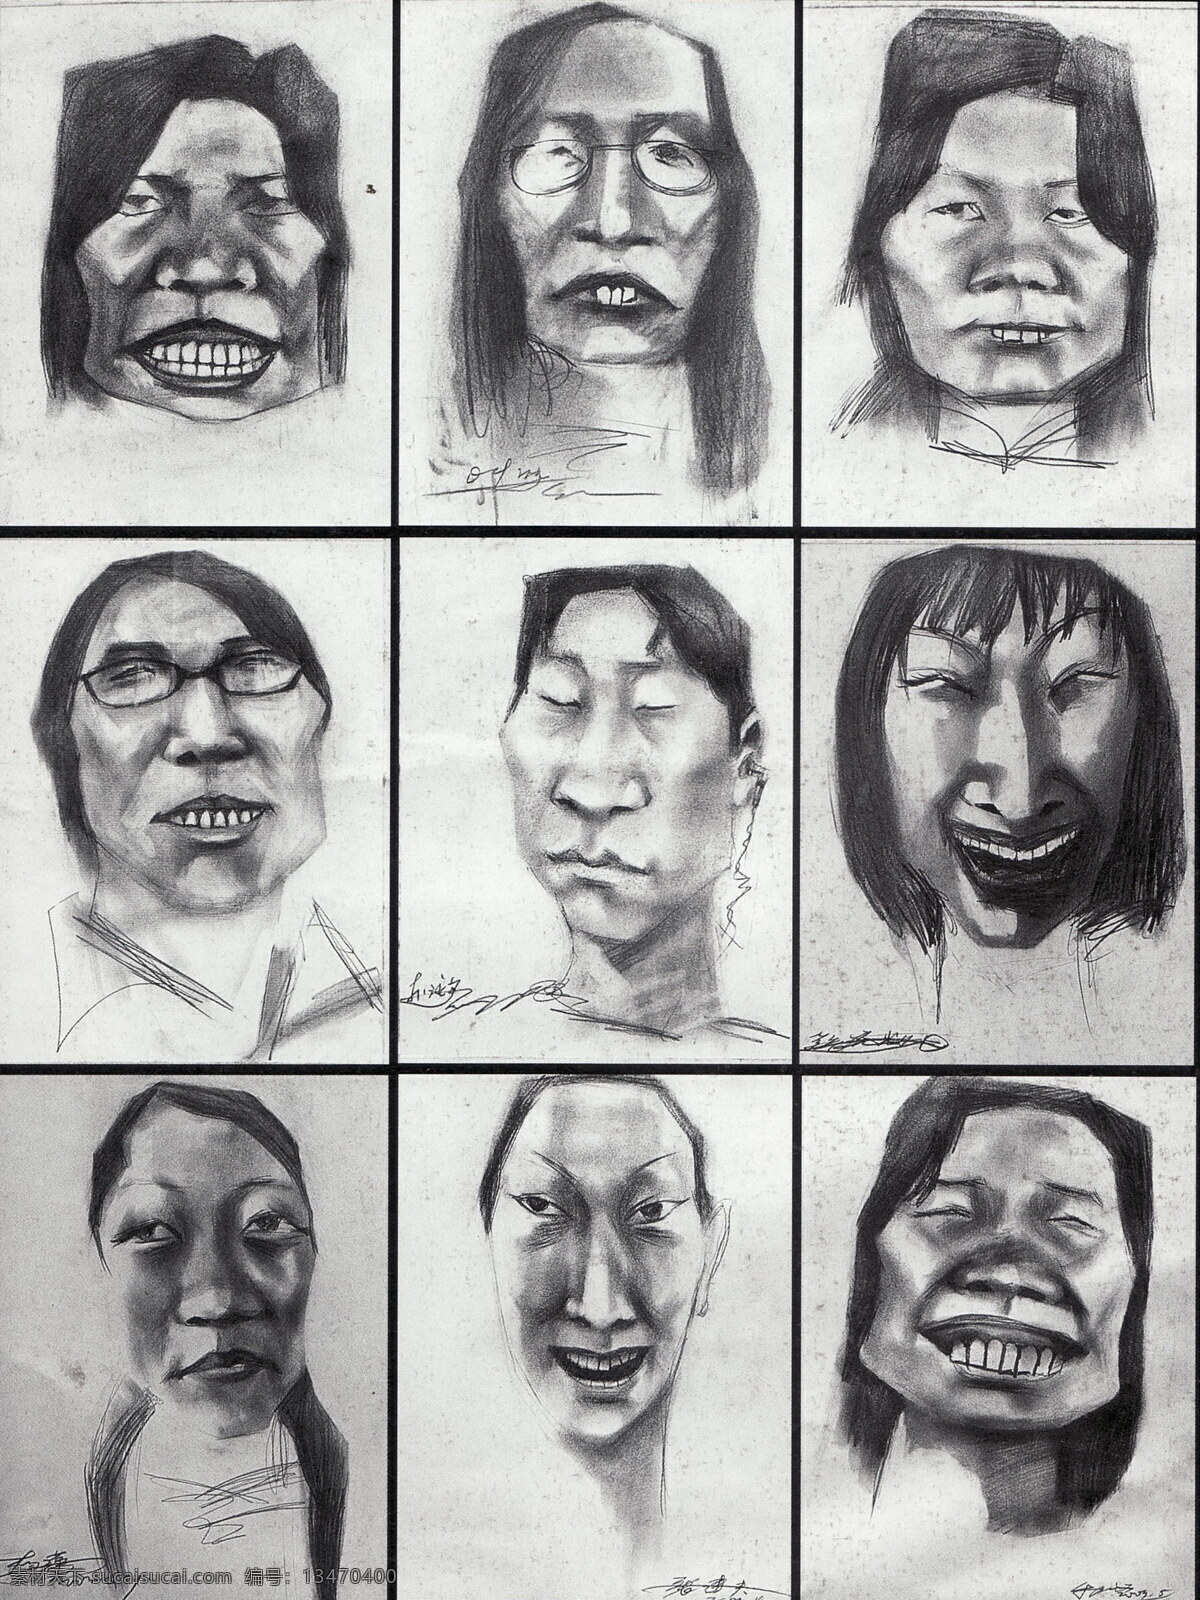 素描头像 头像 素描 中国美术学院 教师作品 头像作品 人物 人头像 高考素描 绘画书法 文化艺术